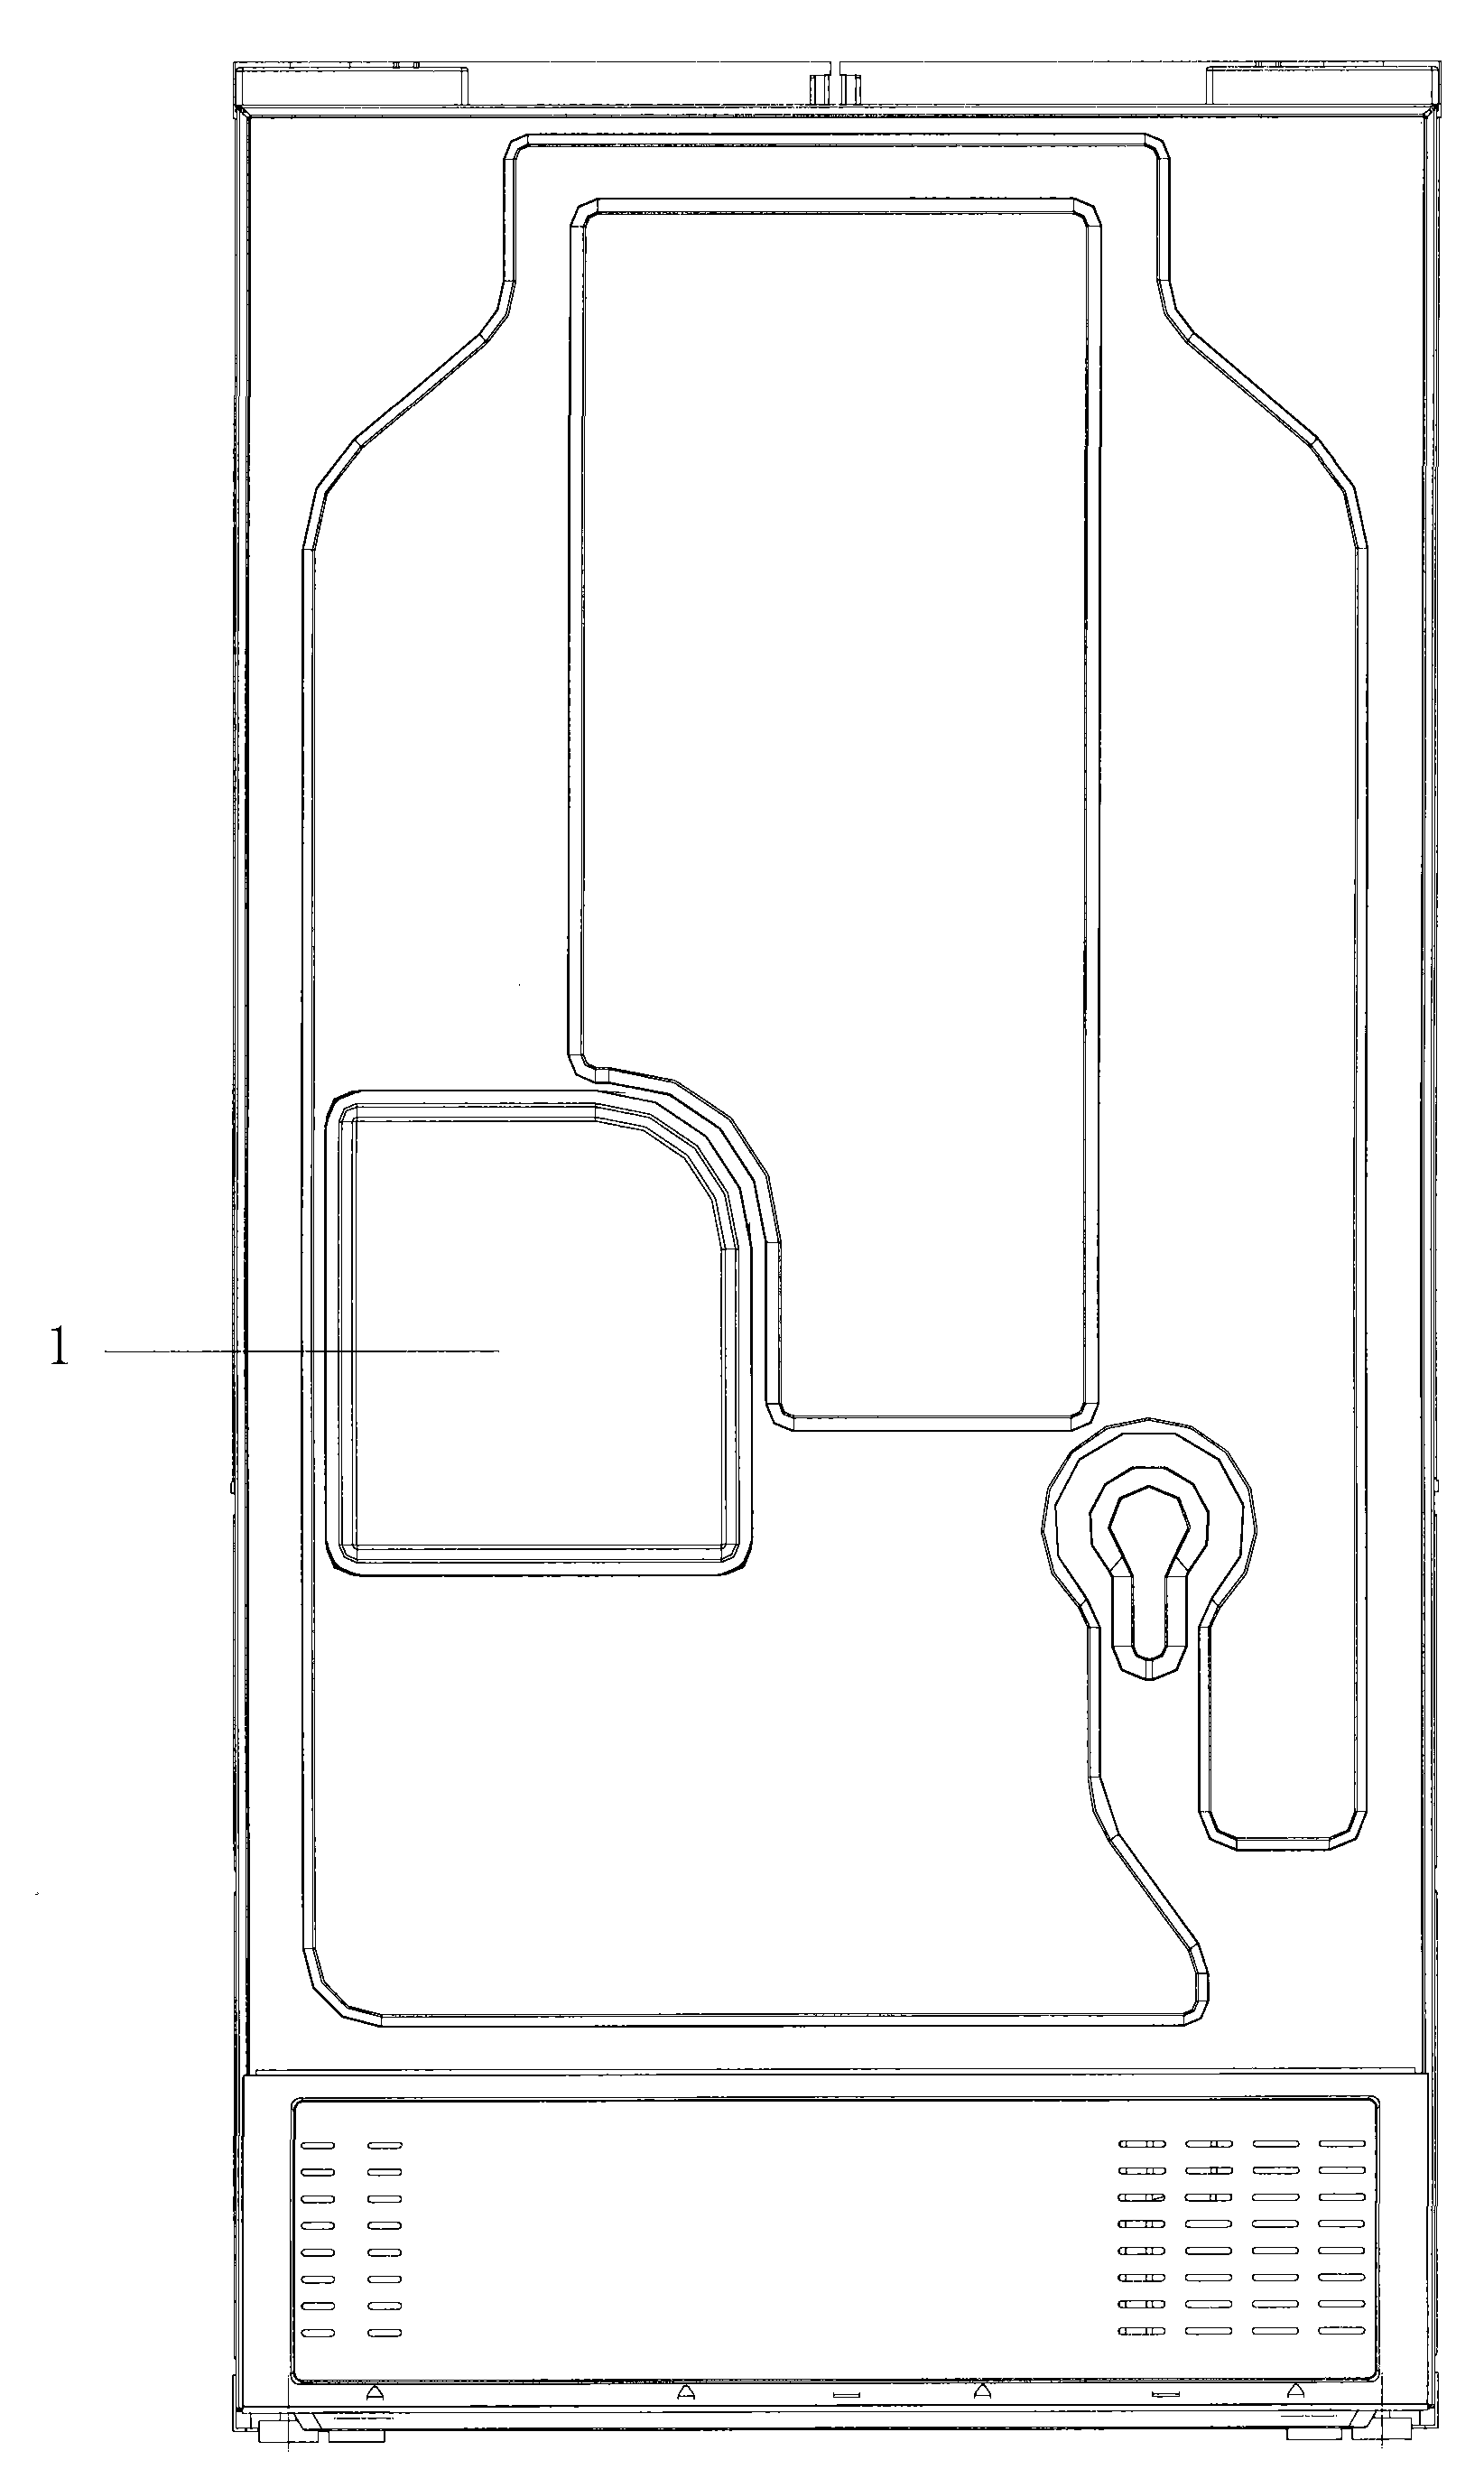 Refrigerator and refrigerator outgoing detector